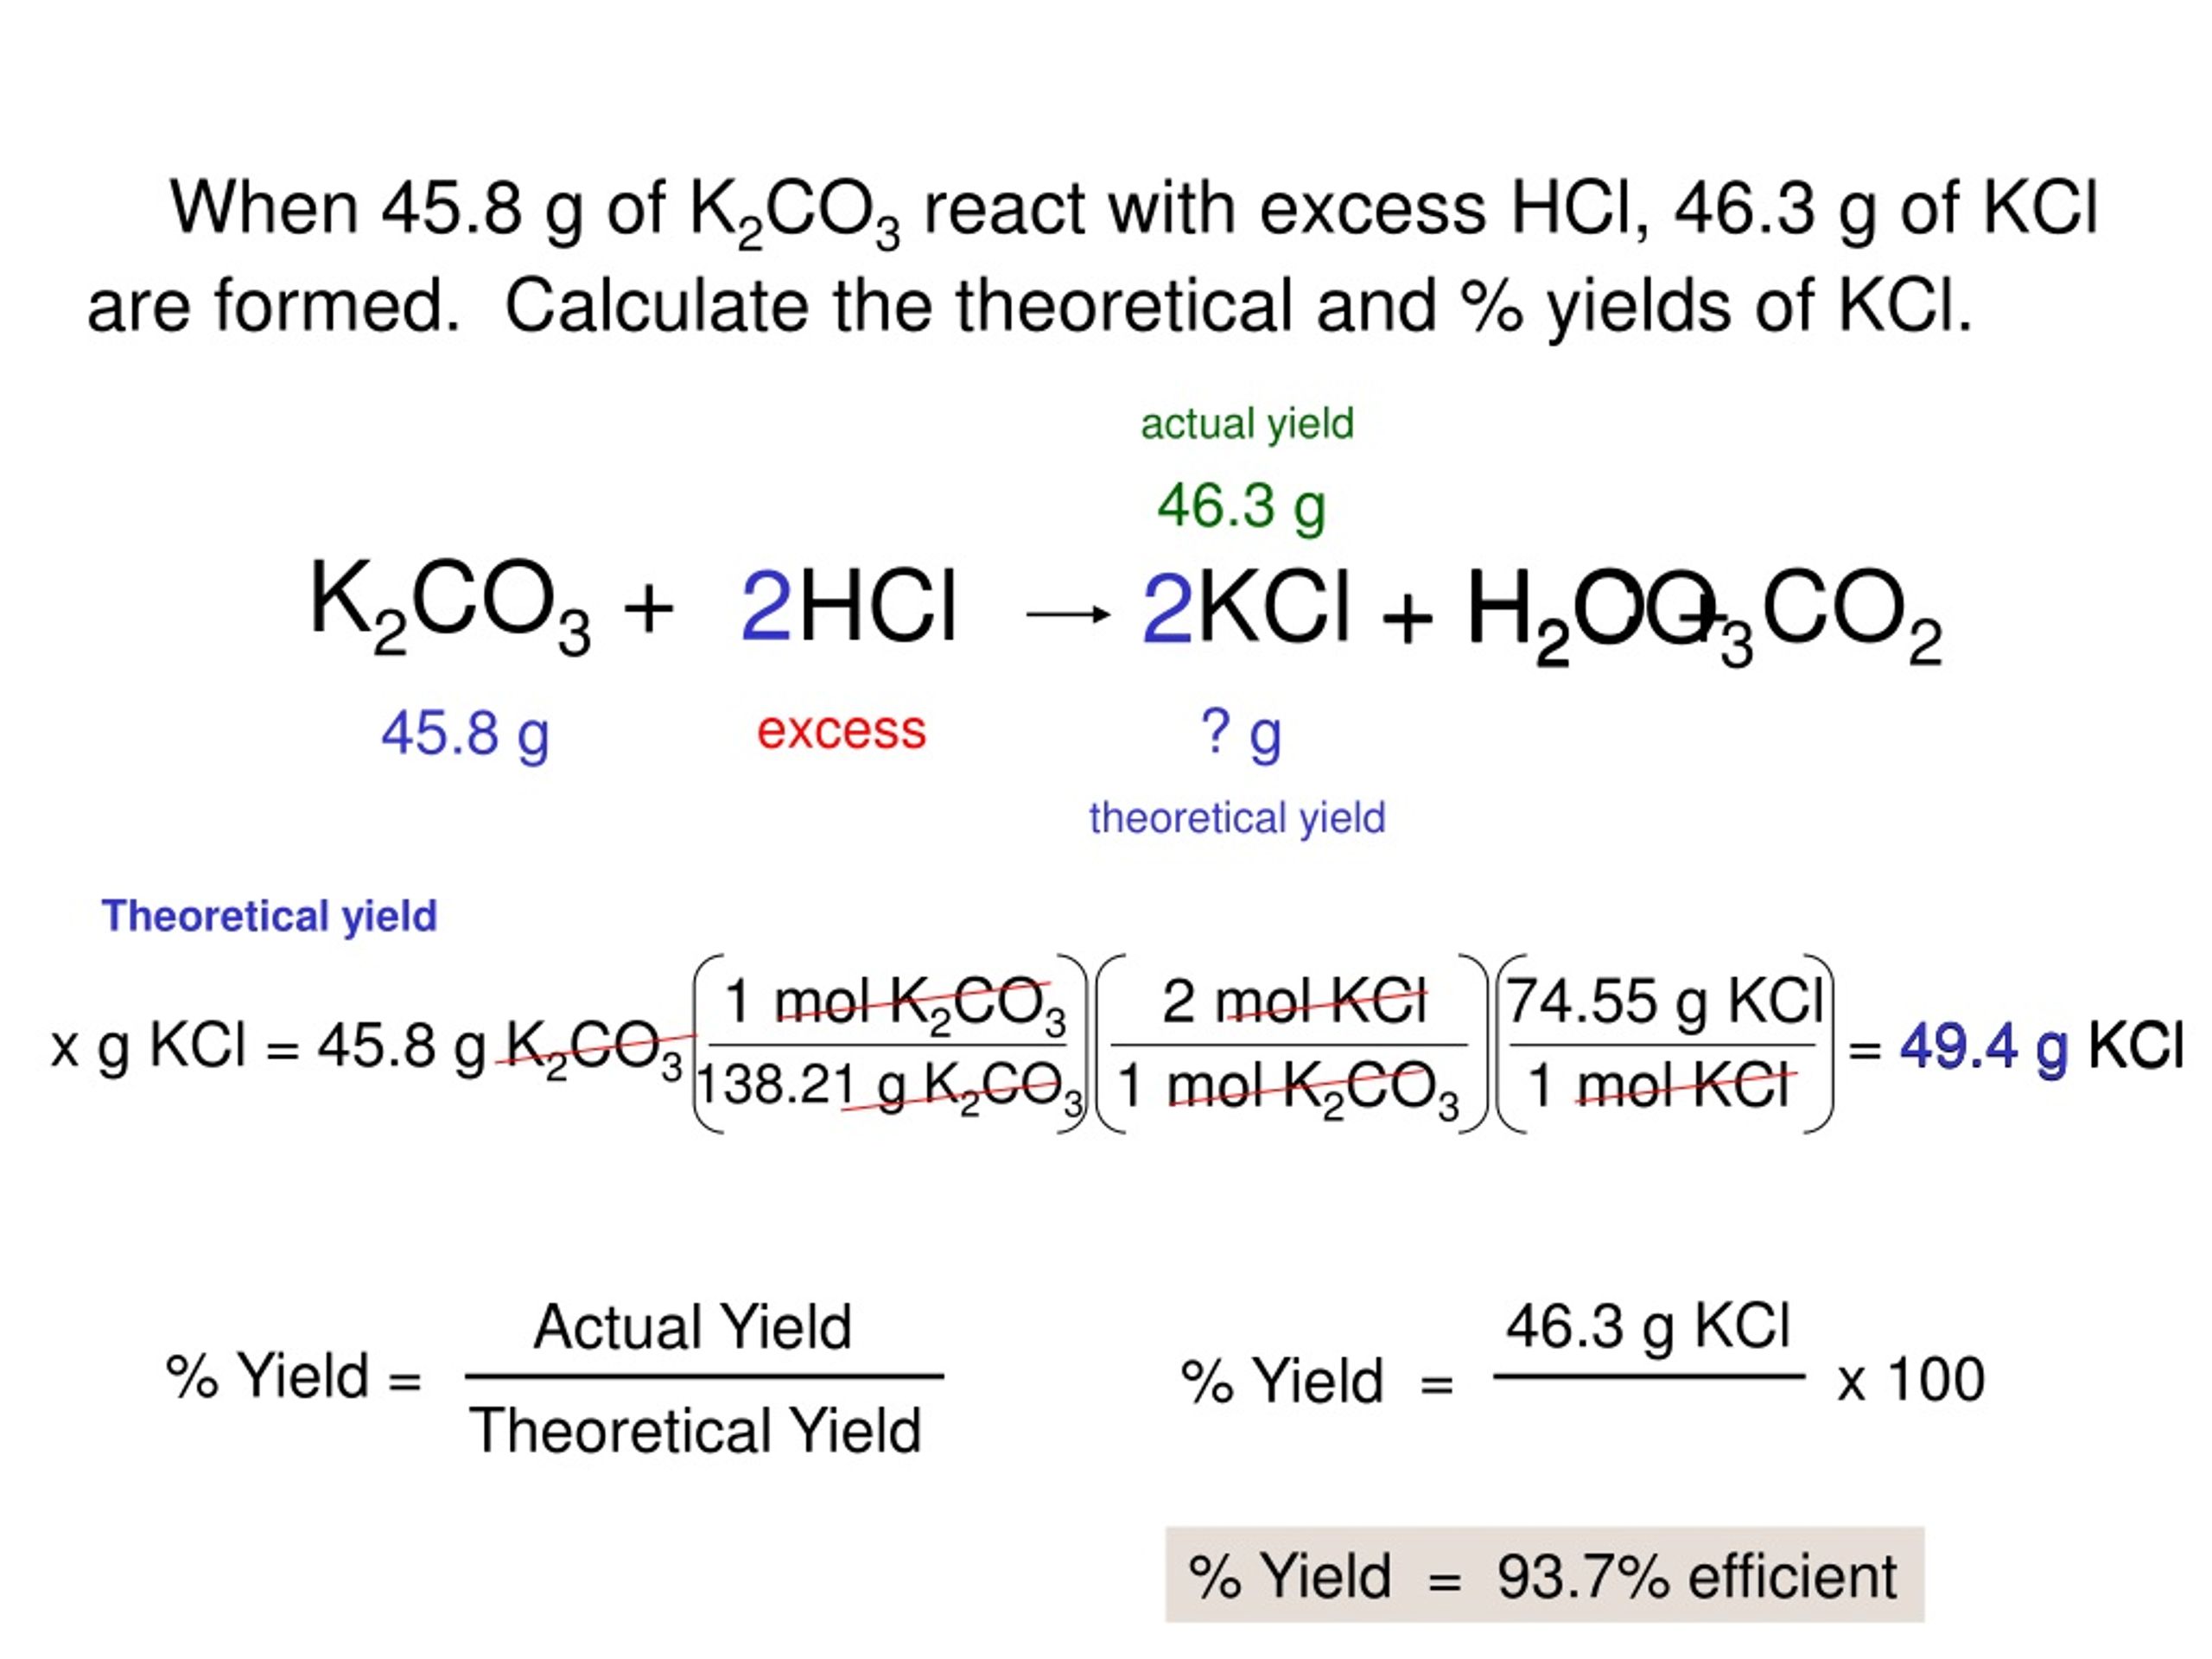 Cu no3 2 kci. K2co3 KCL. Co2 k2co3 реакция. K2co3 + 2hcl = 2kcl + h2o + co2. K+co2.